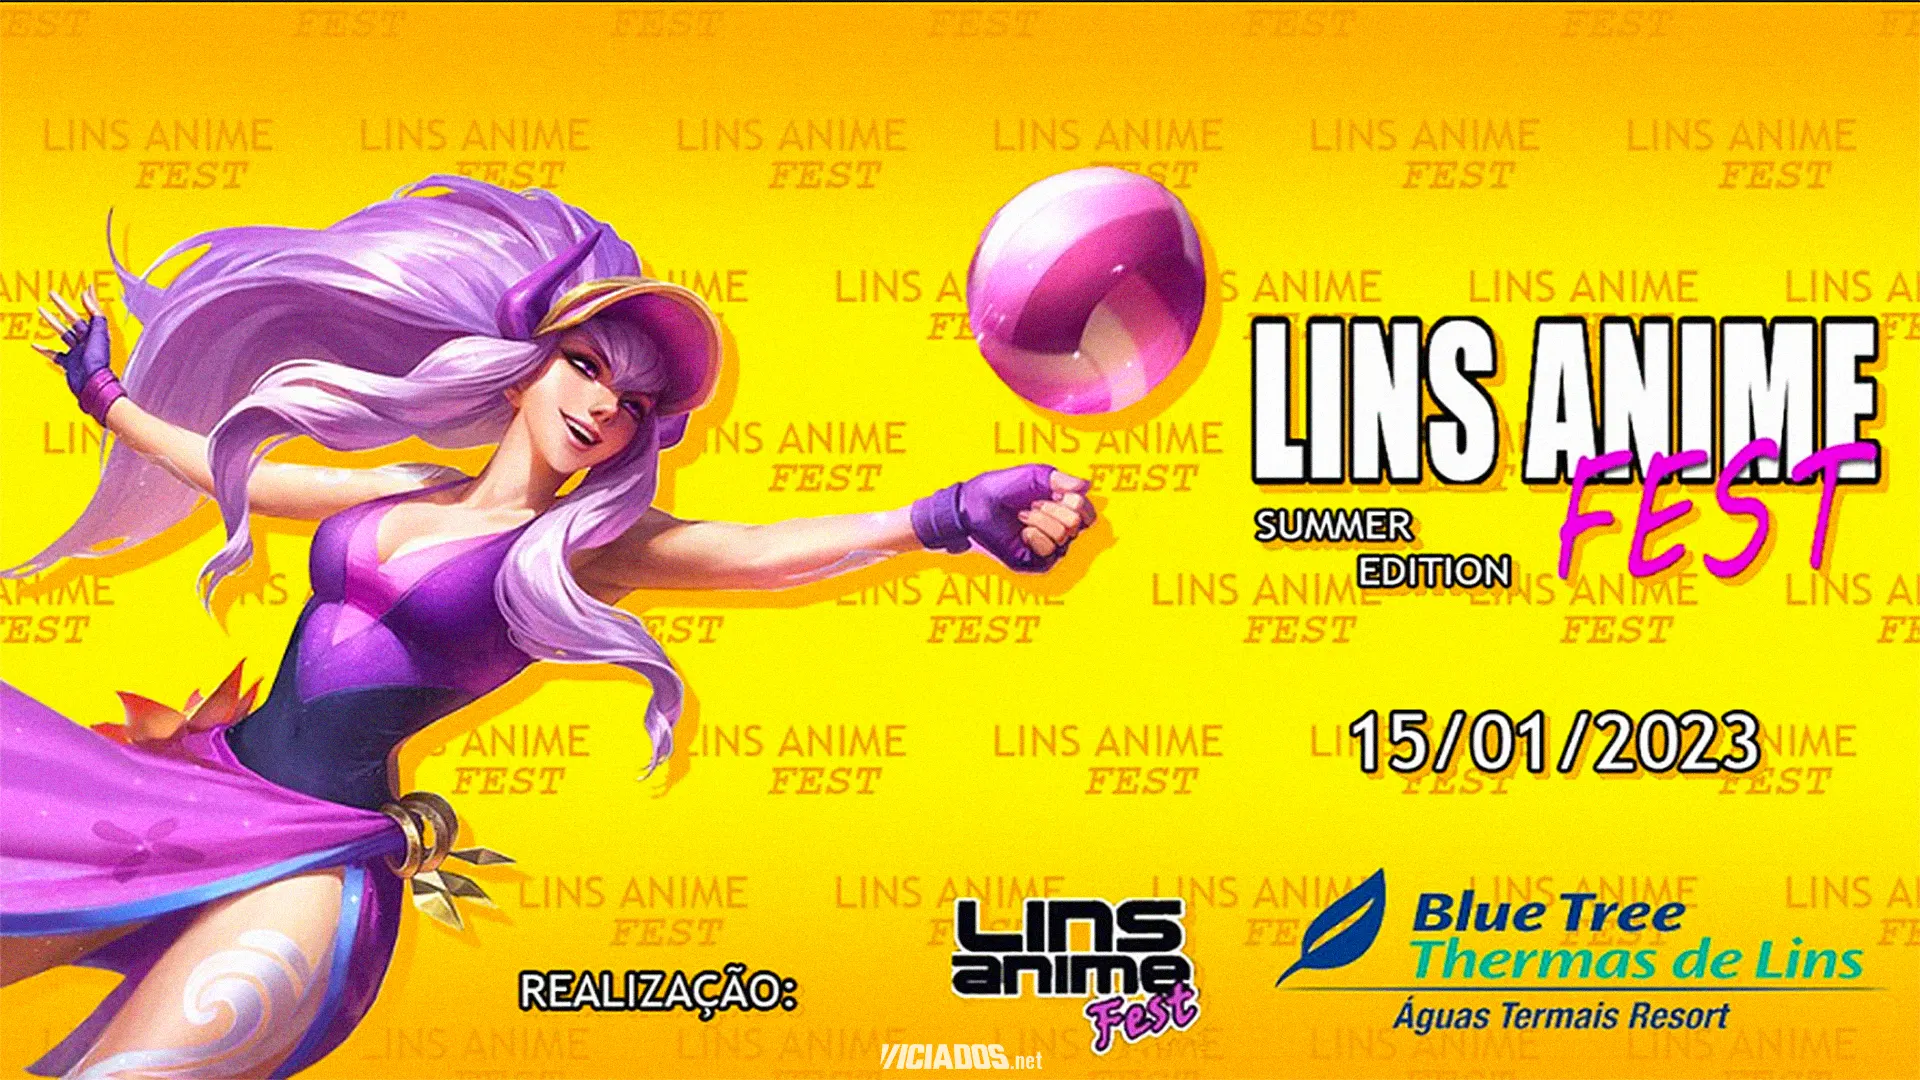 Lins Anime Fest | Evento acontece nesta semana; Corra para garantir o ingresso! 2023 Viciados